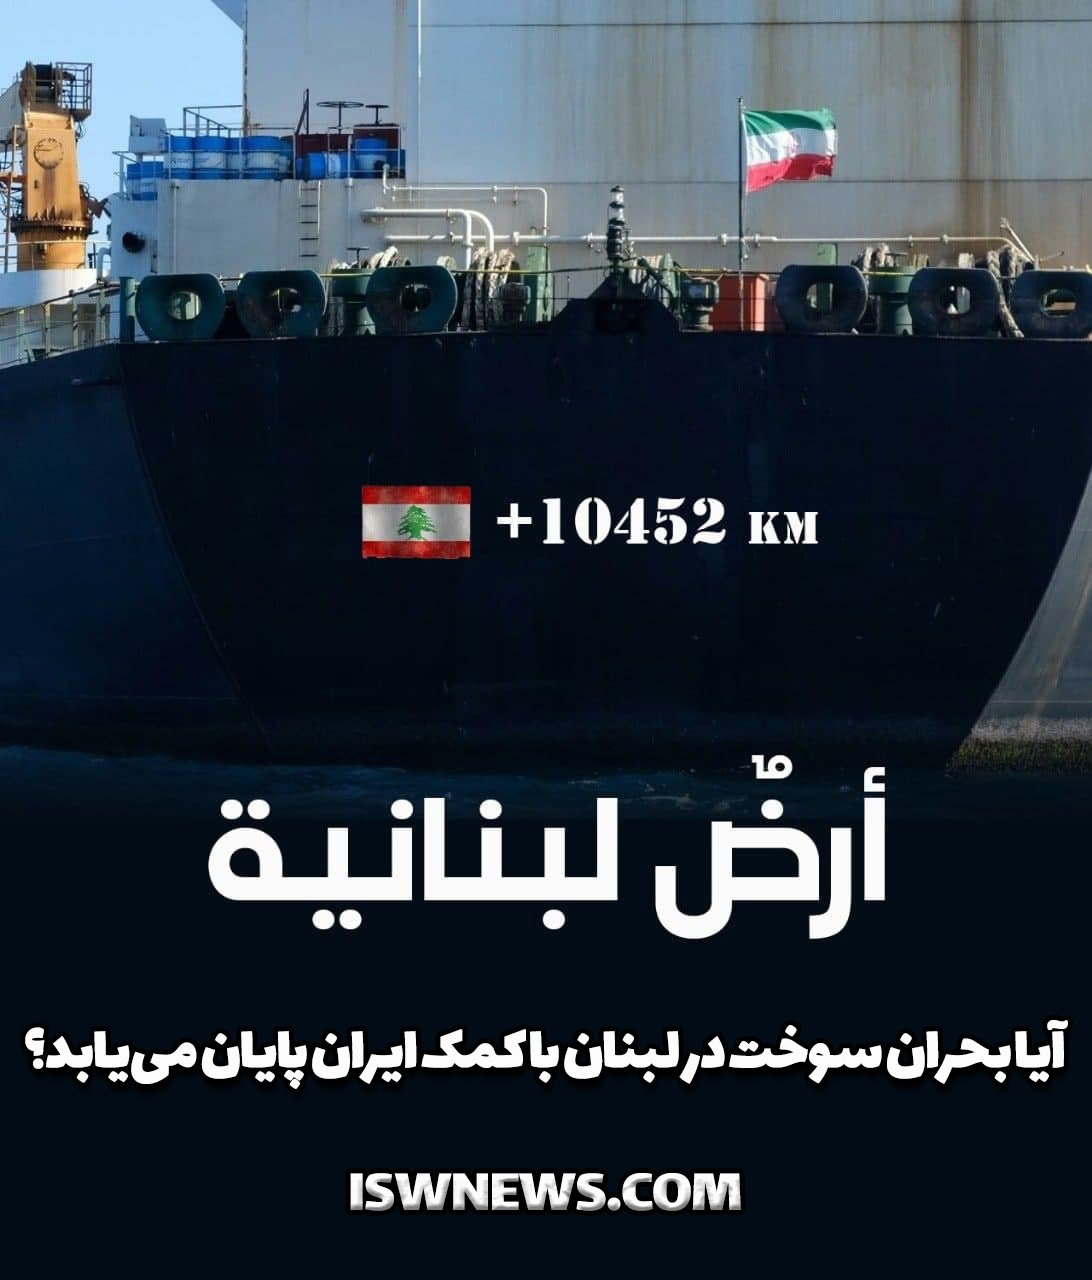 یادداشت اختصاصی قدسنا/ کشتی های ایرانی پیش به سوی لبنان

توزیع سوخت در لبنان؛ مسئله ای که نقاب از چهره جریانات طرفدار غرب برداشته است